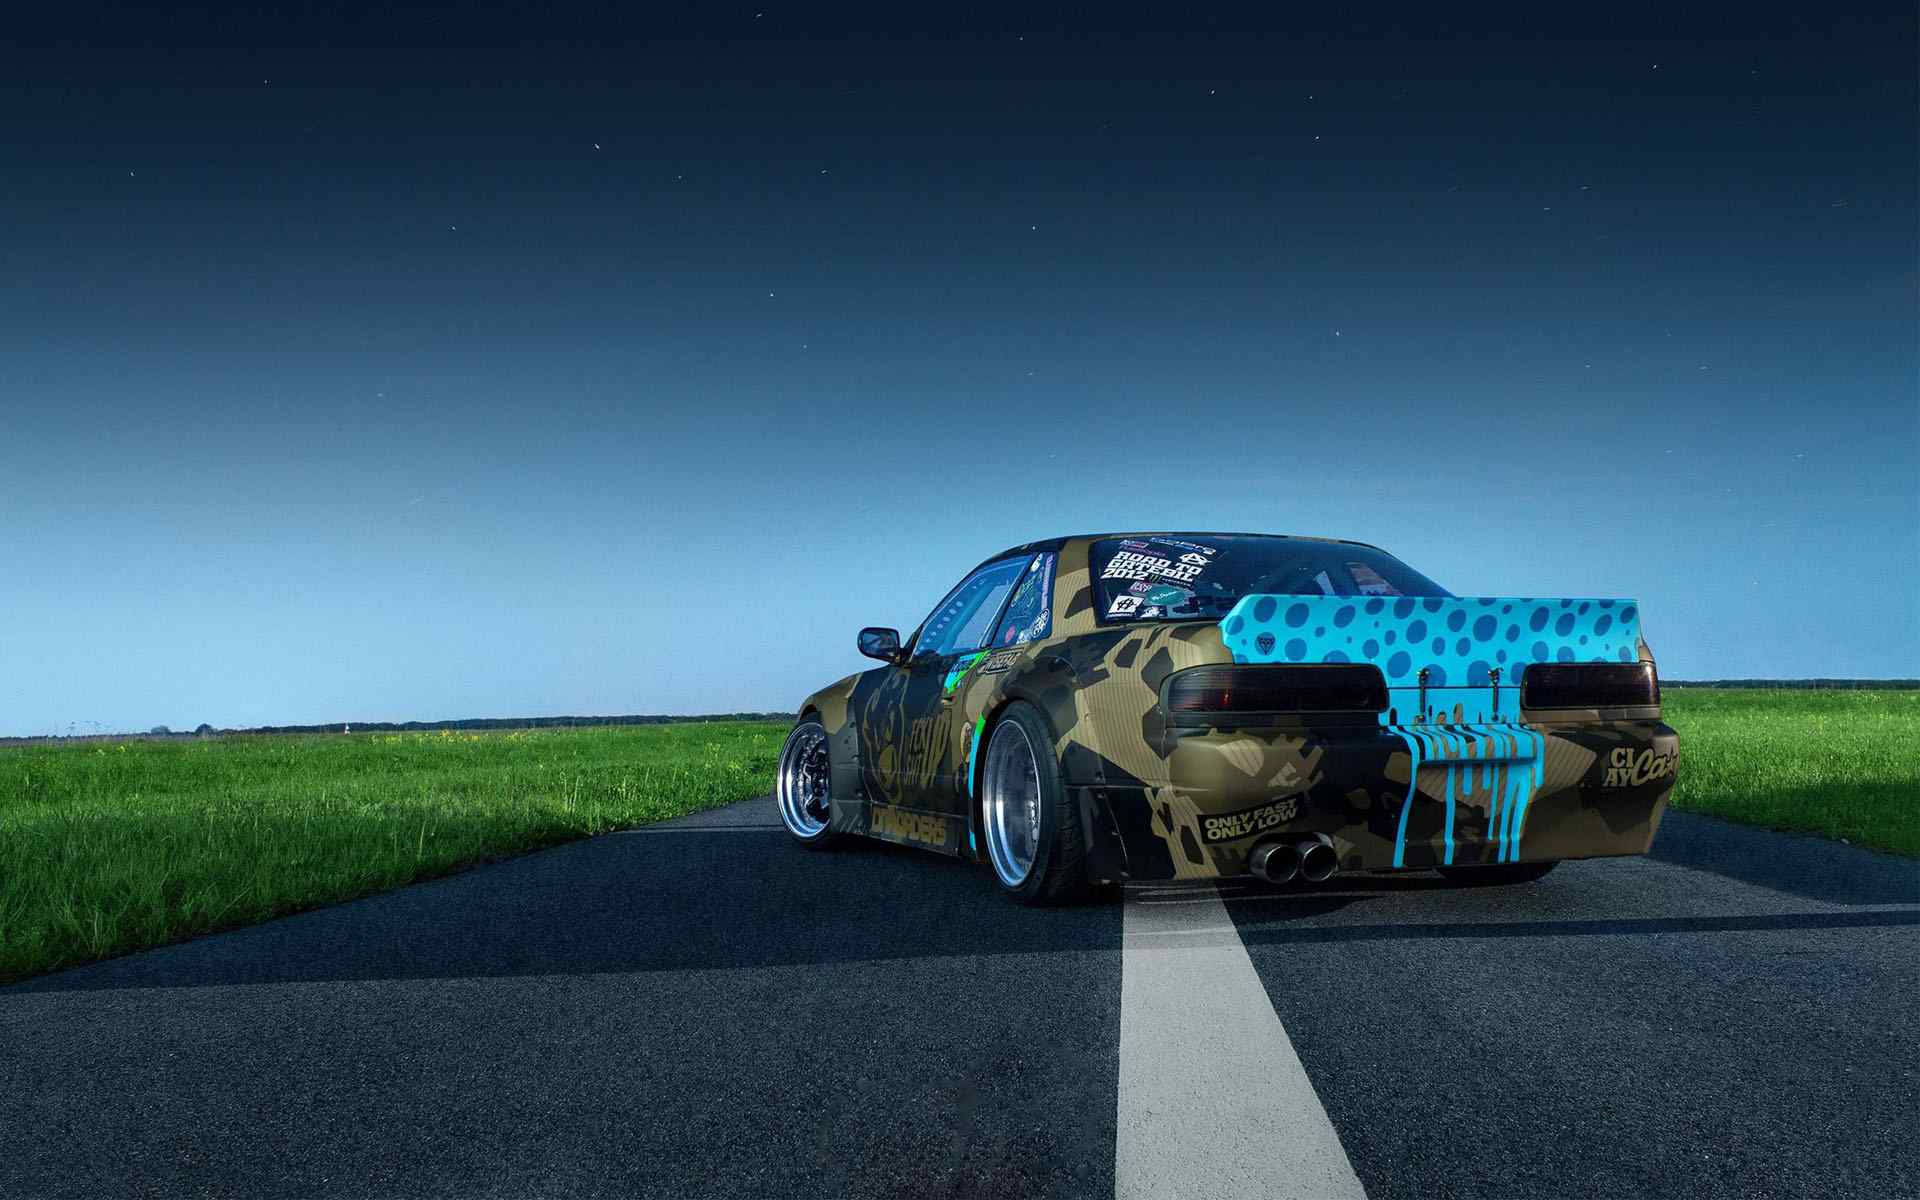 迷彩改装跑车Nissan S13酷炫桌面壁纸图集